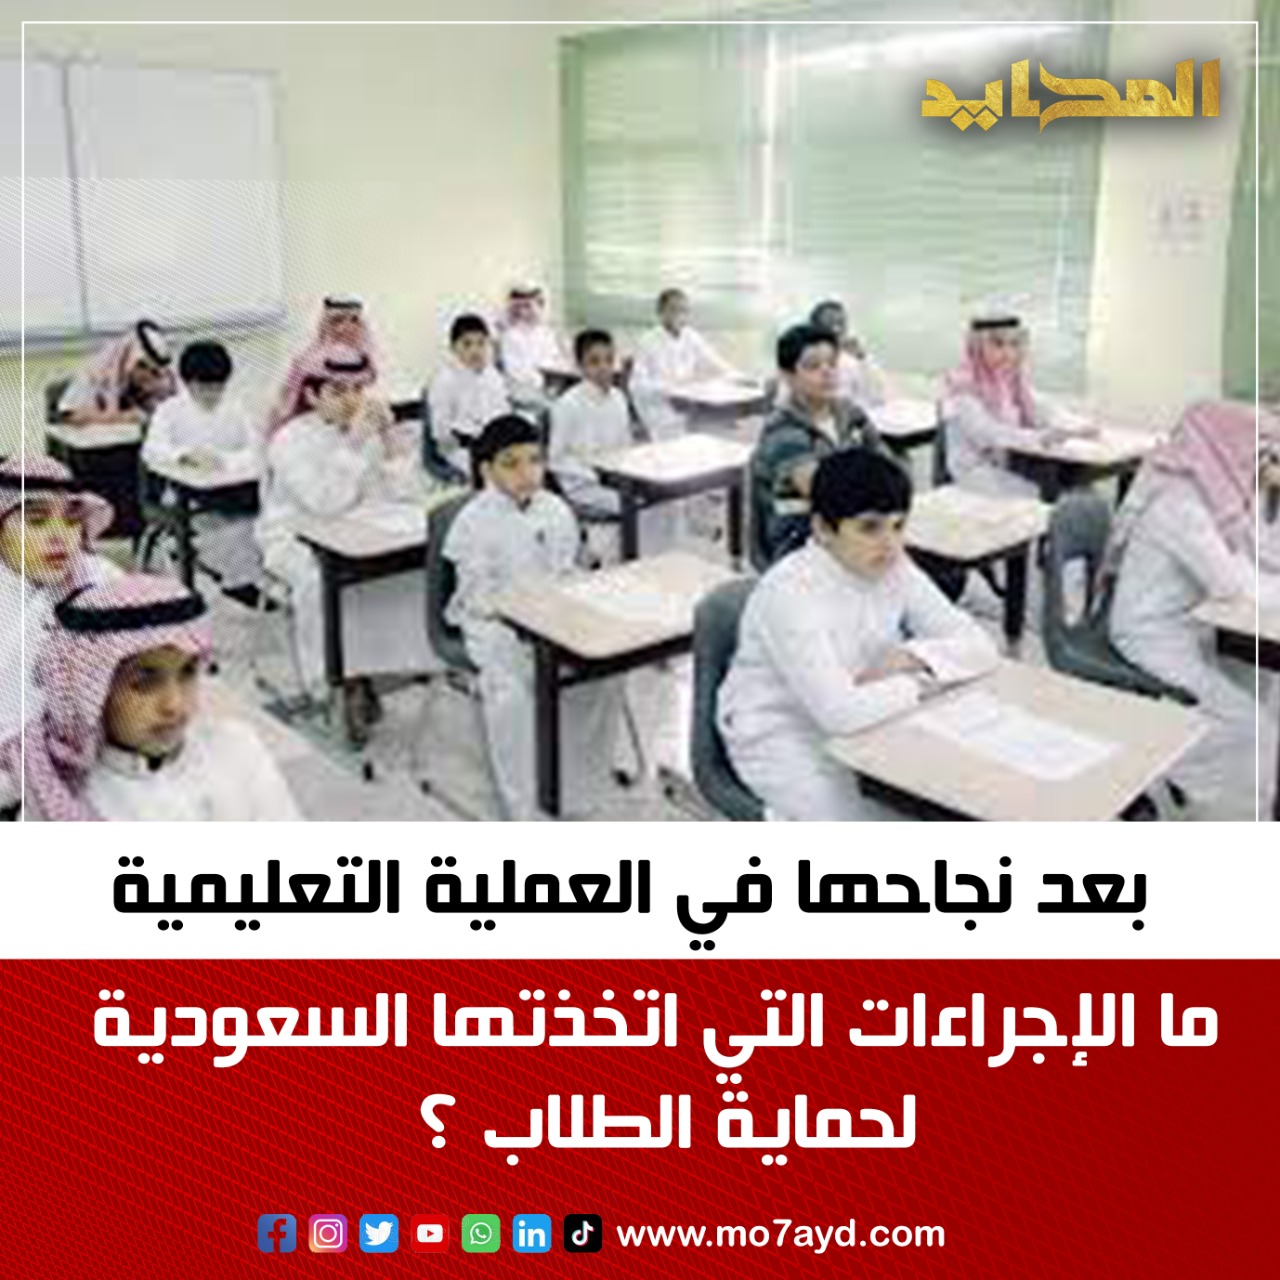 بعد نجاحها في العملية التعليمية.. ما الإجراءات التي اتخذتها السعودية لحماية الطلاب ؟ | المحايد الإخباري